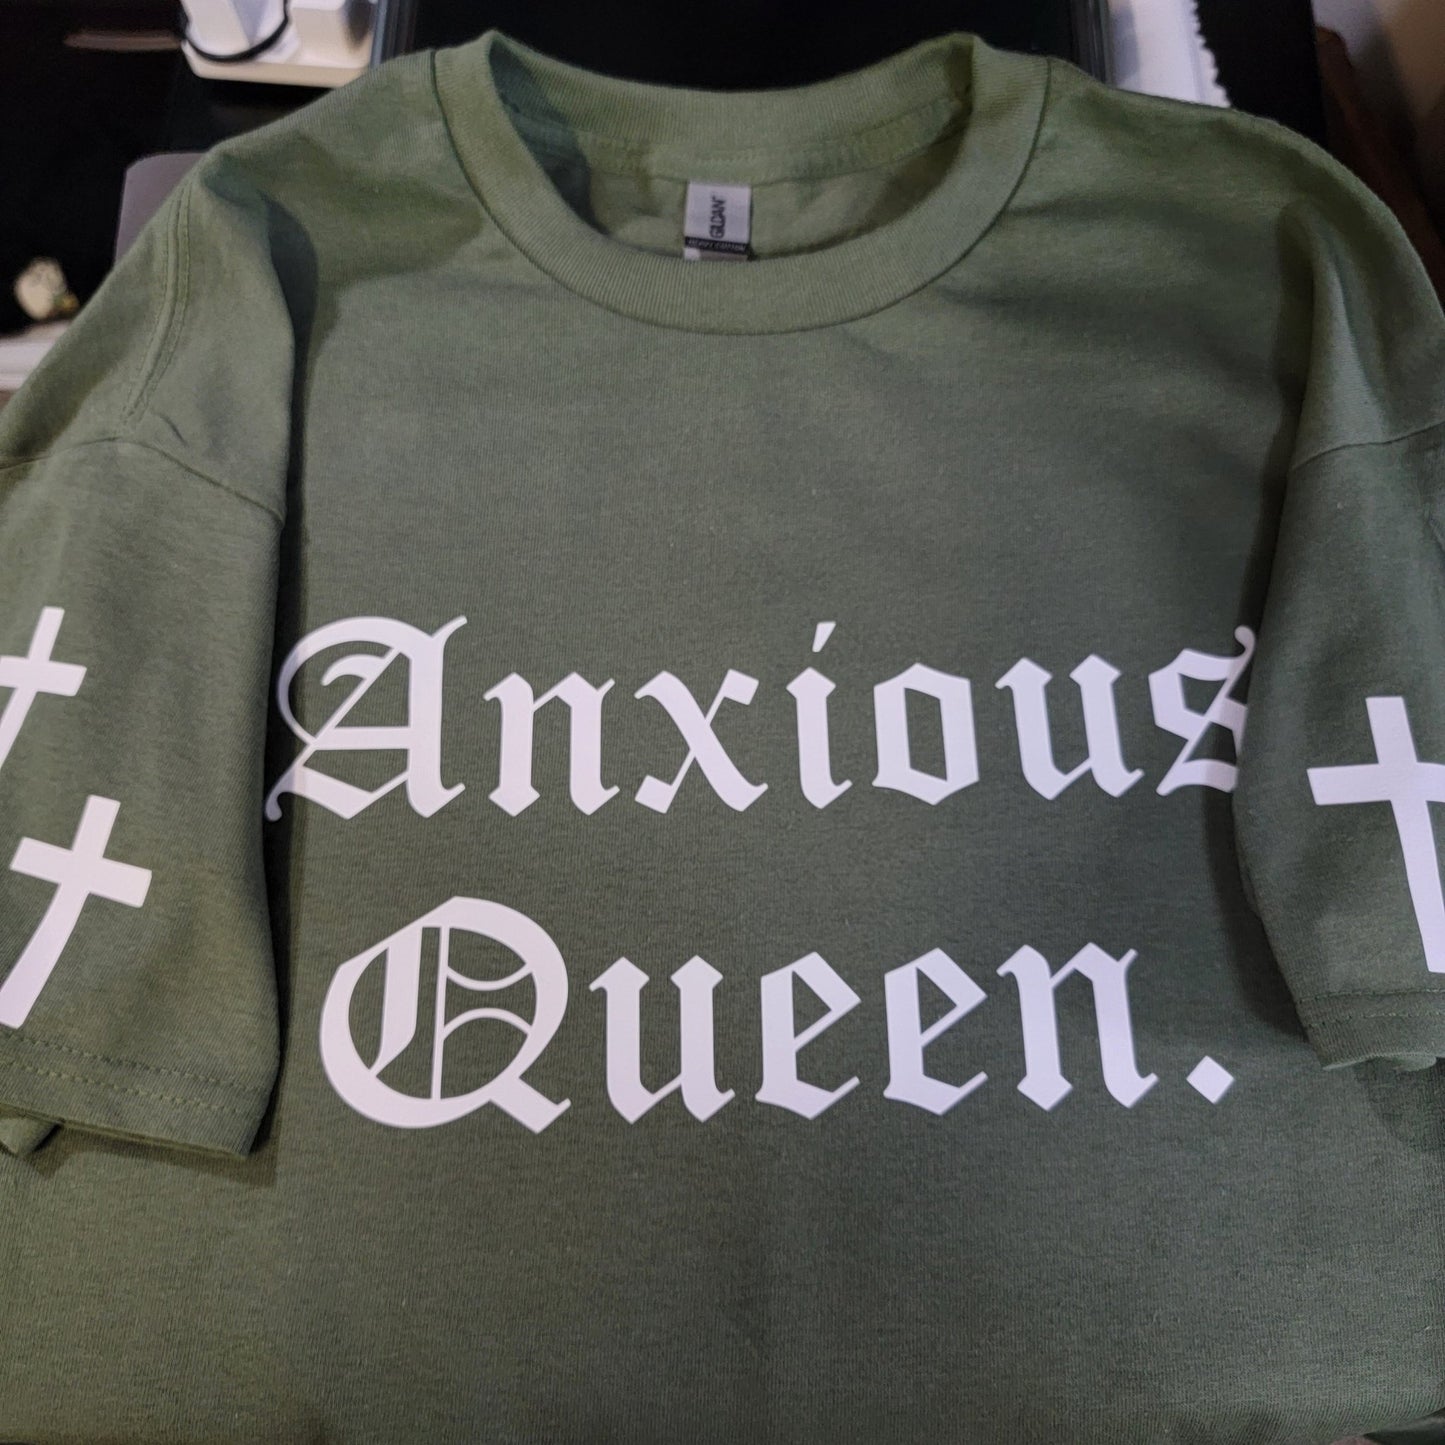 Anxious Queen Unisex T-shirt